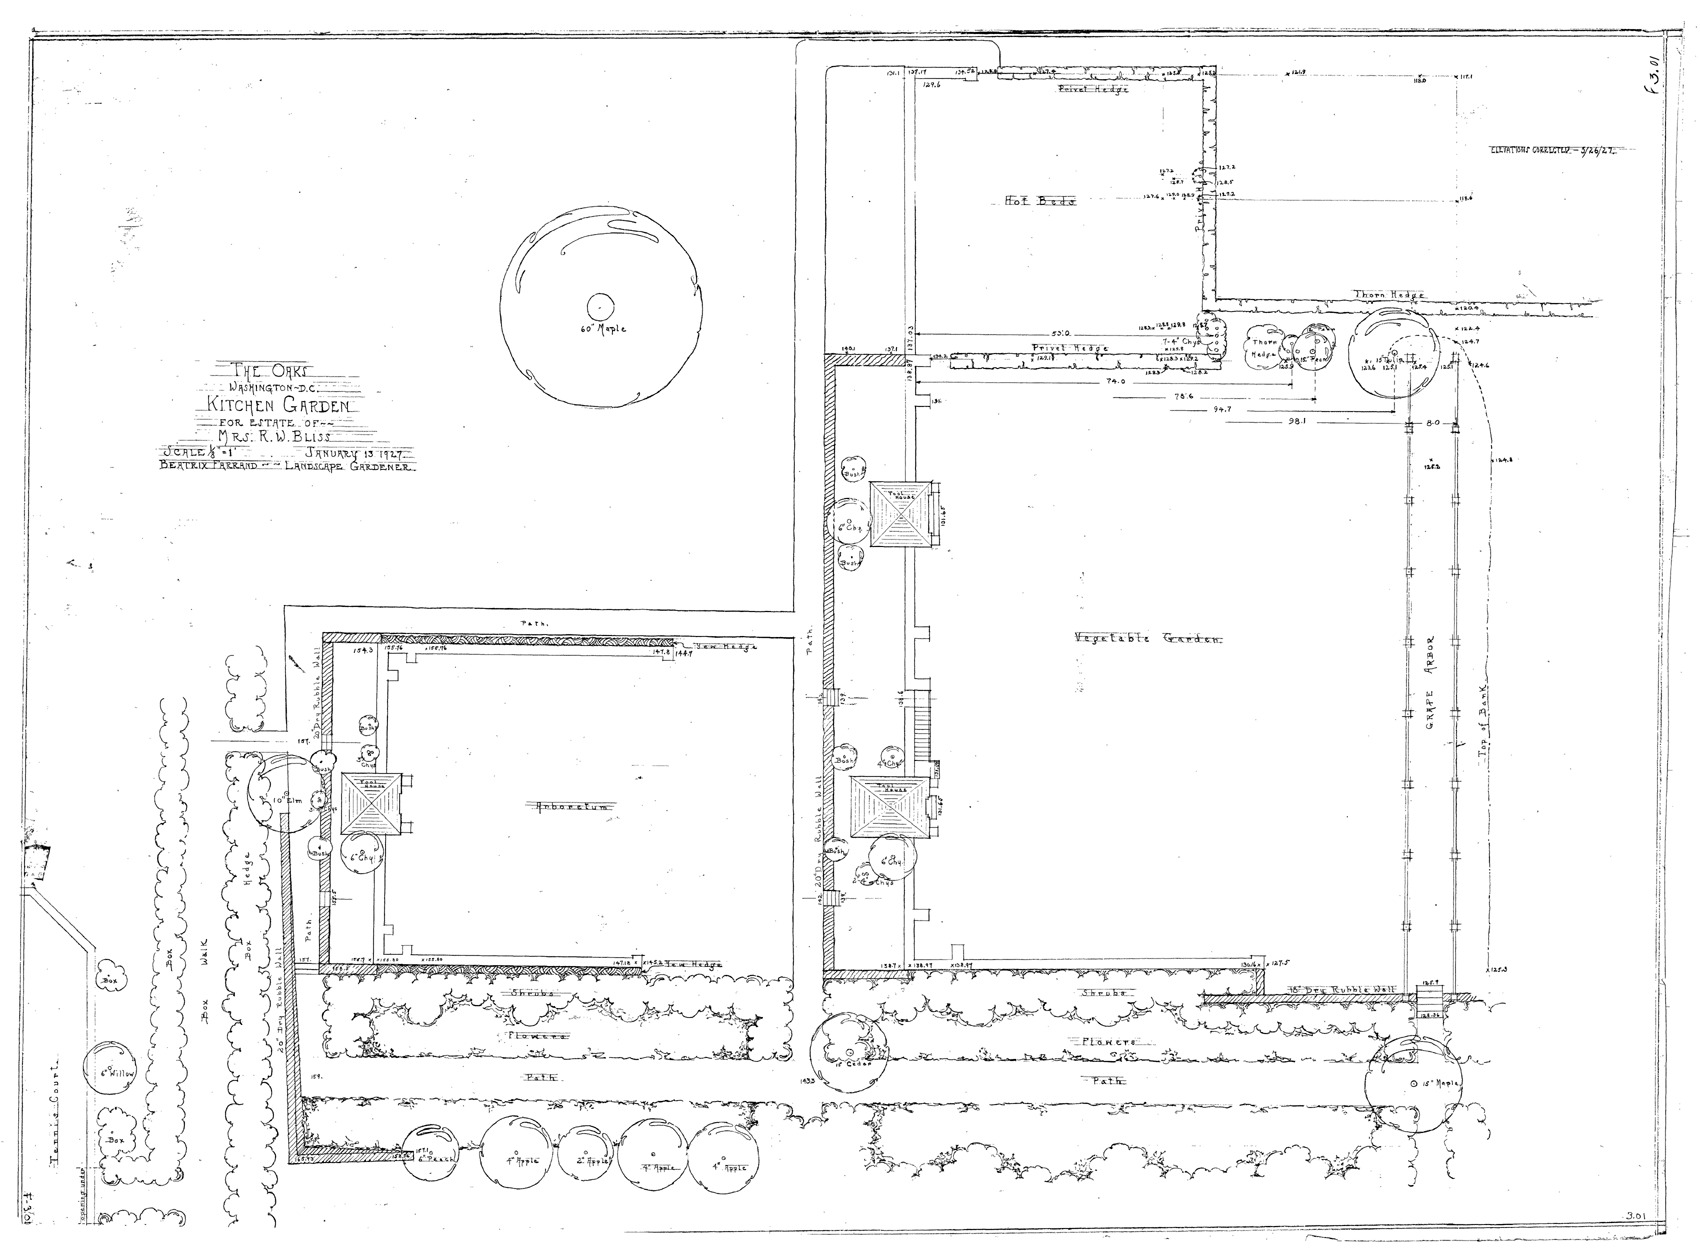 Plan, Kitchen Garden (01.13.1927)